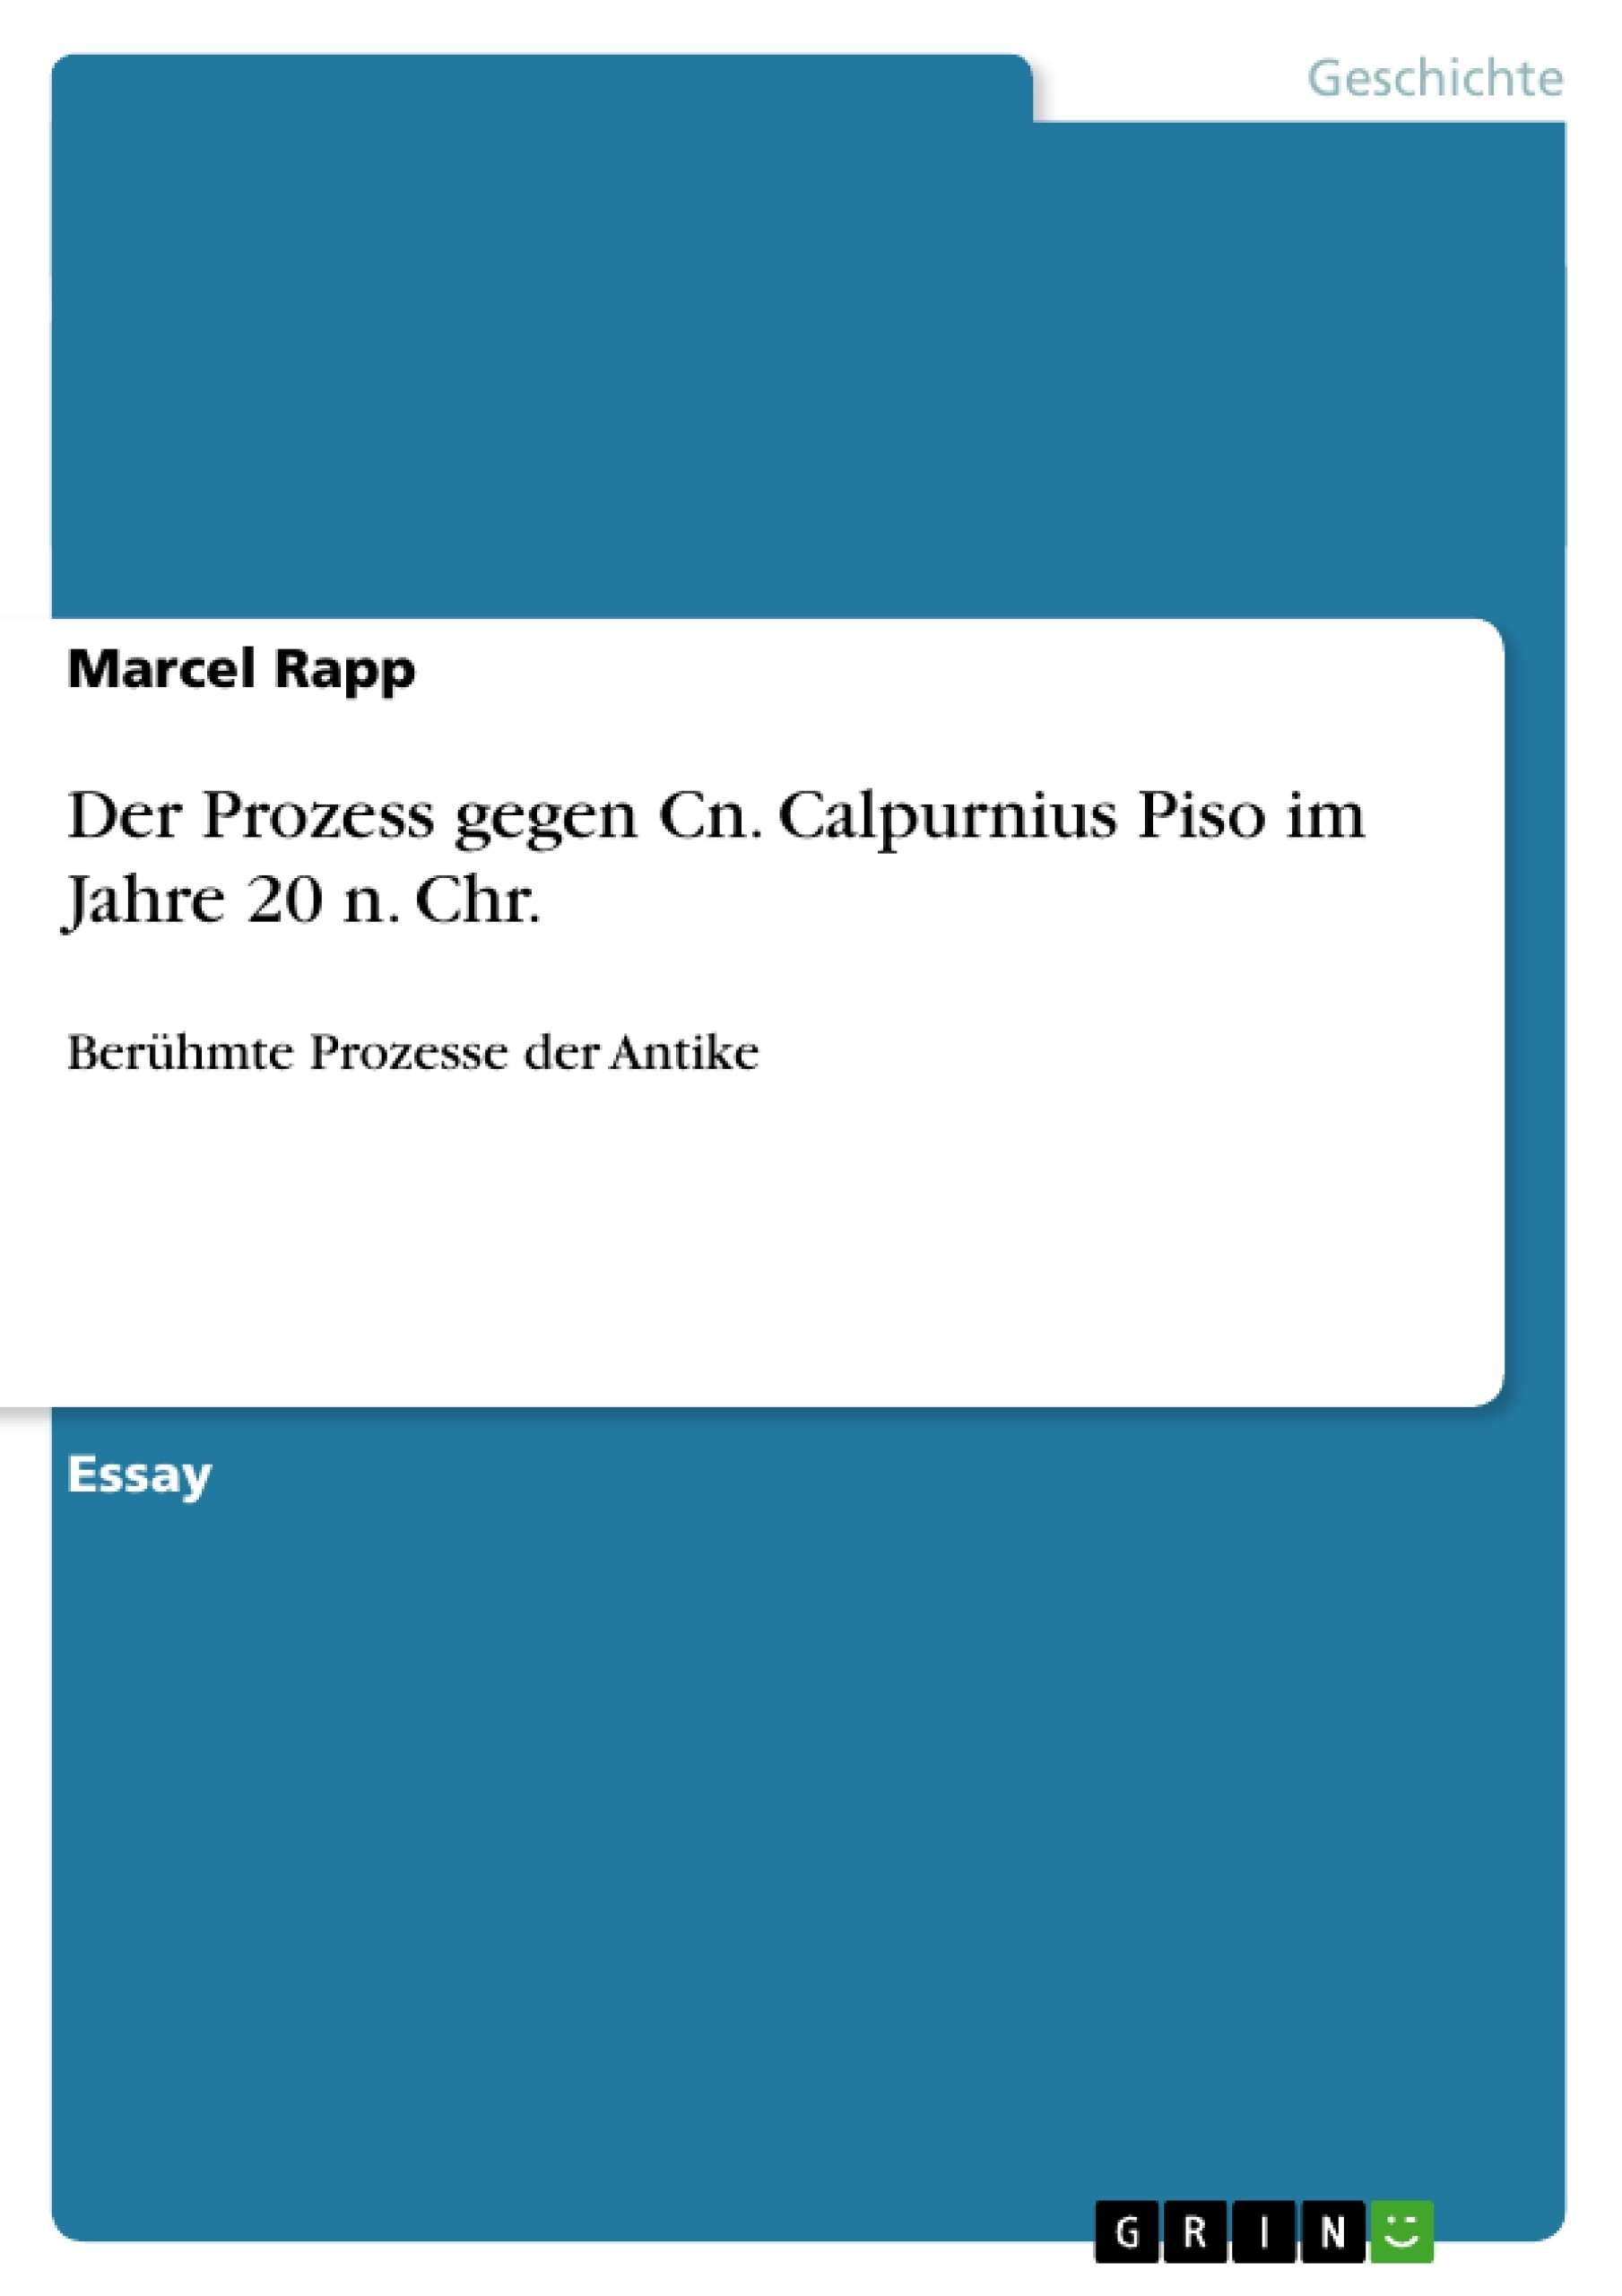 Título: Der Prozess gegen Cn. Calpurnius Piso im Jahre 20 n. Chr.